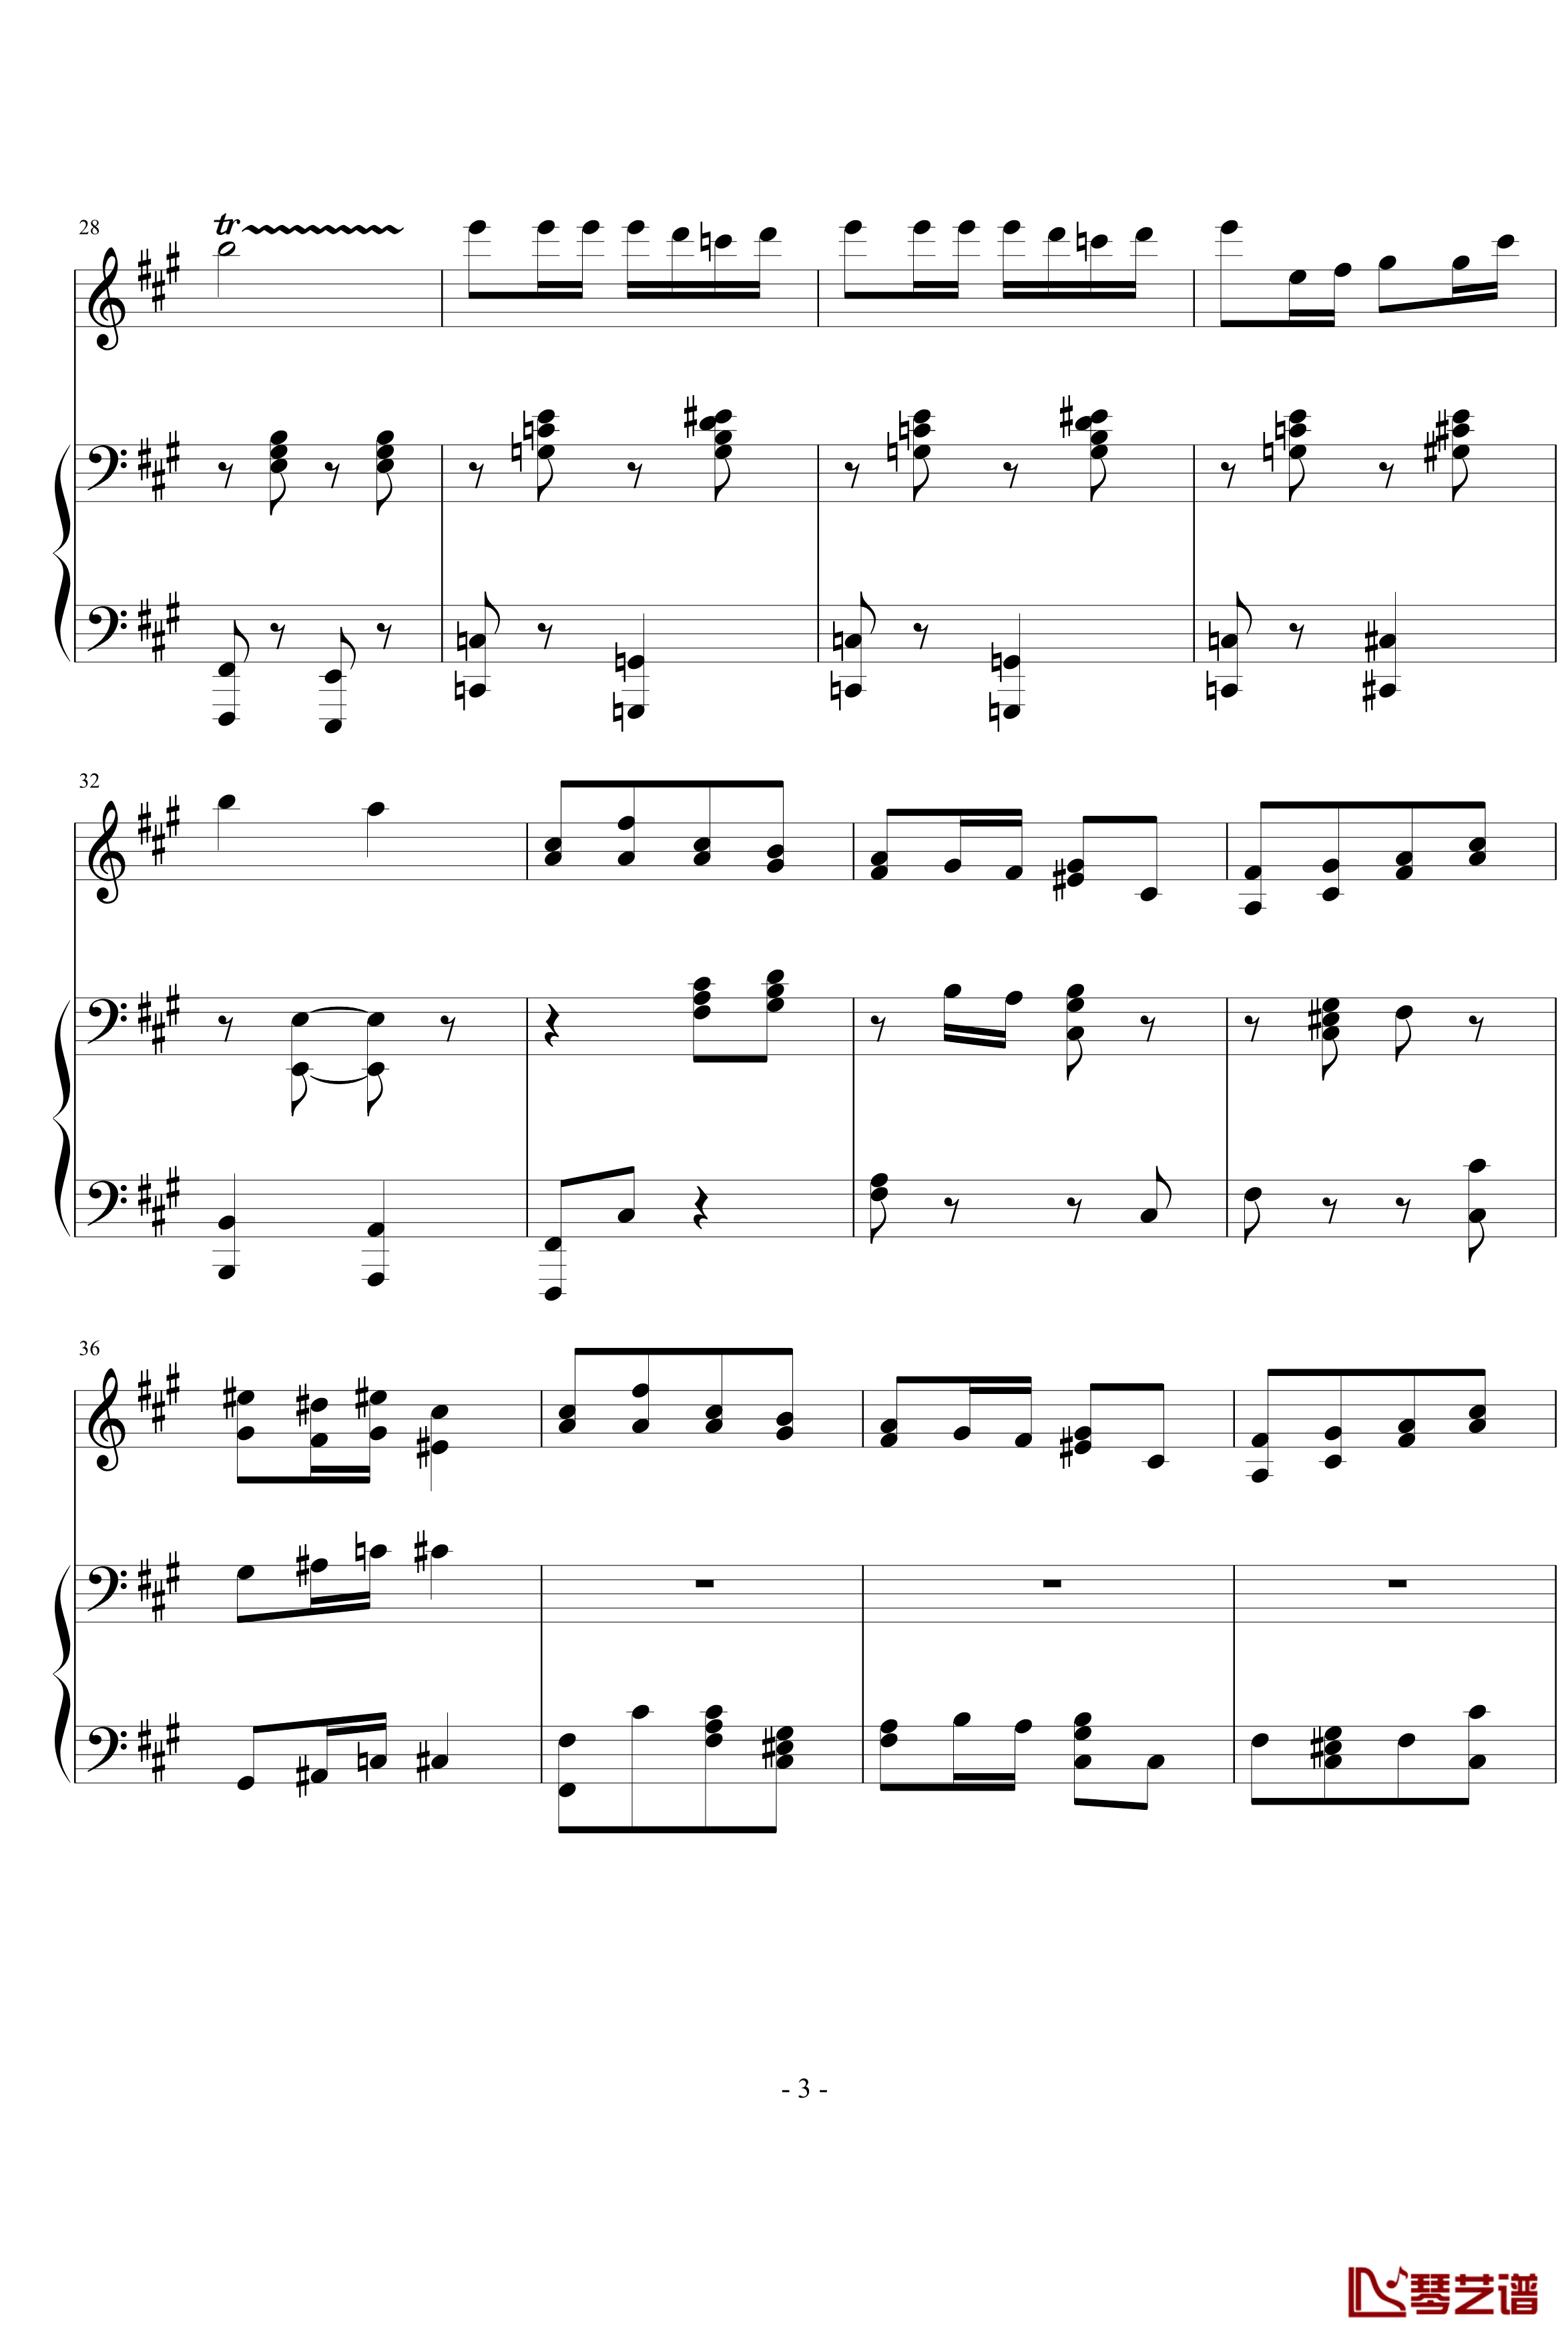 卡门木琴和钢琴钢琴谱-比才-Bizet3